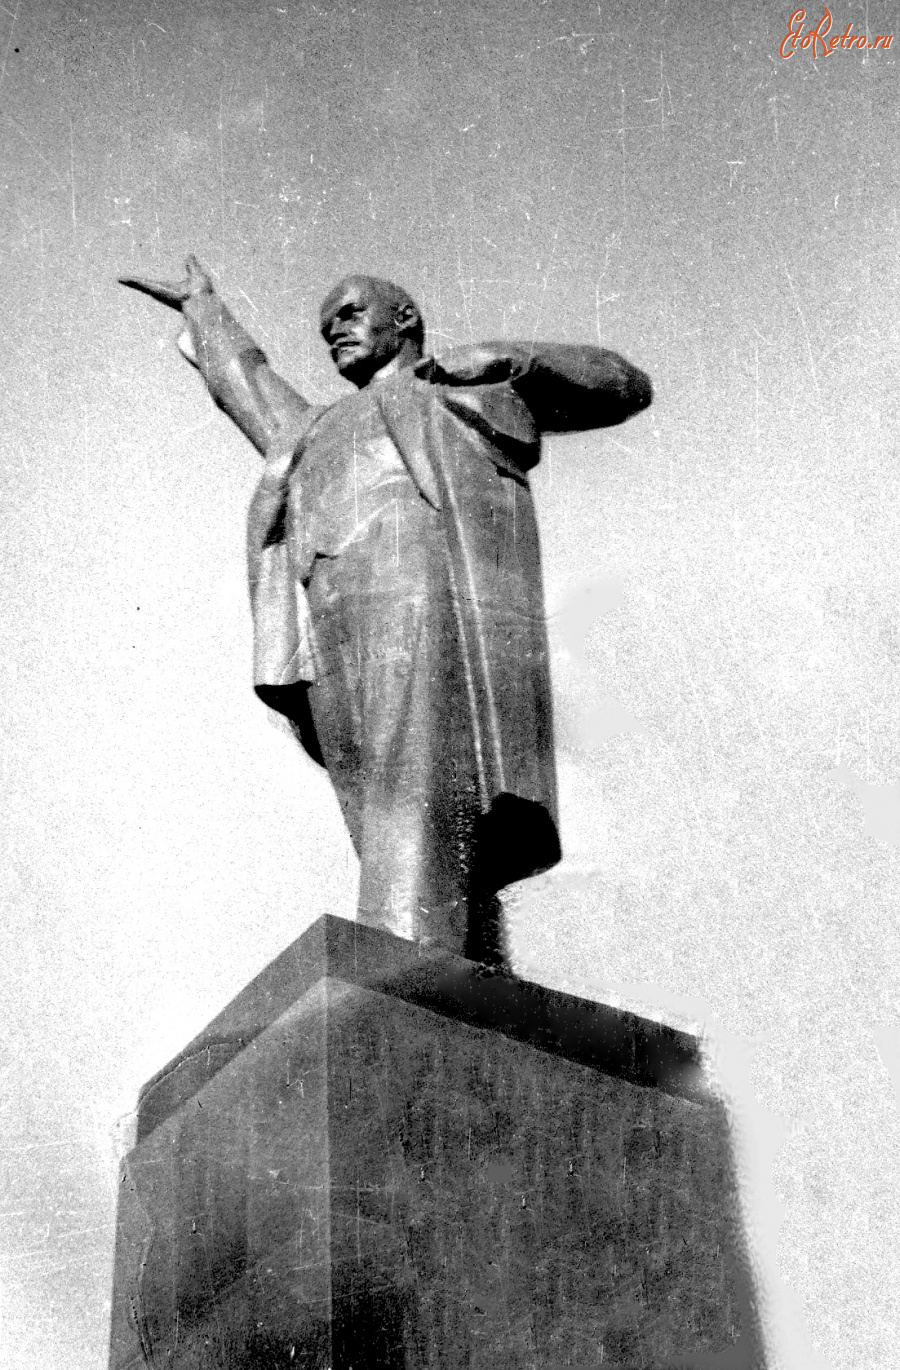 Тамбов - Памятник В.И. Ленину на площади его имени.